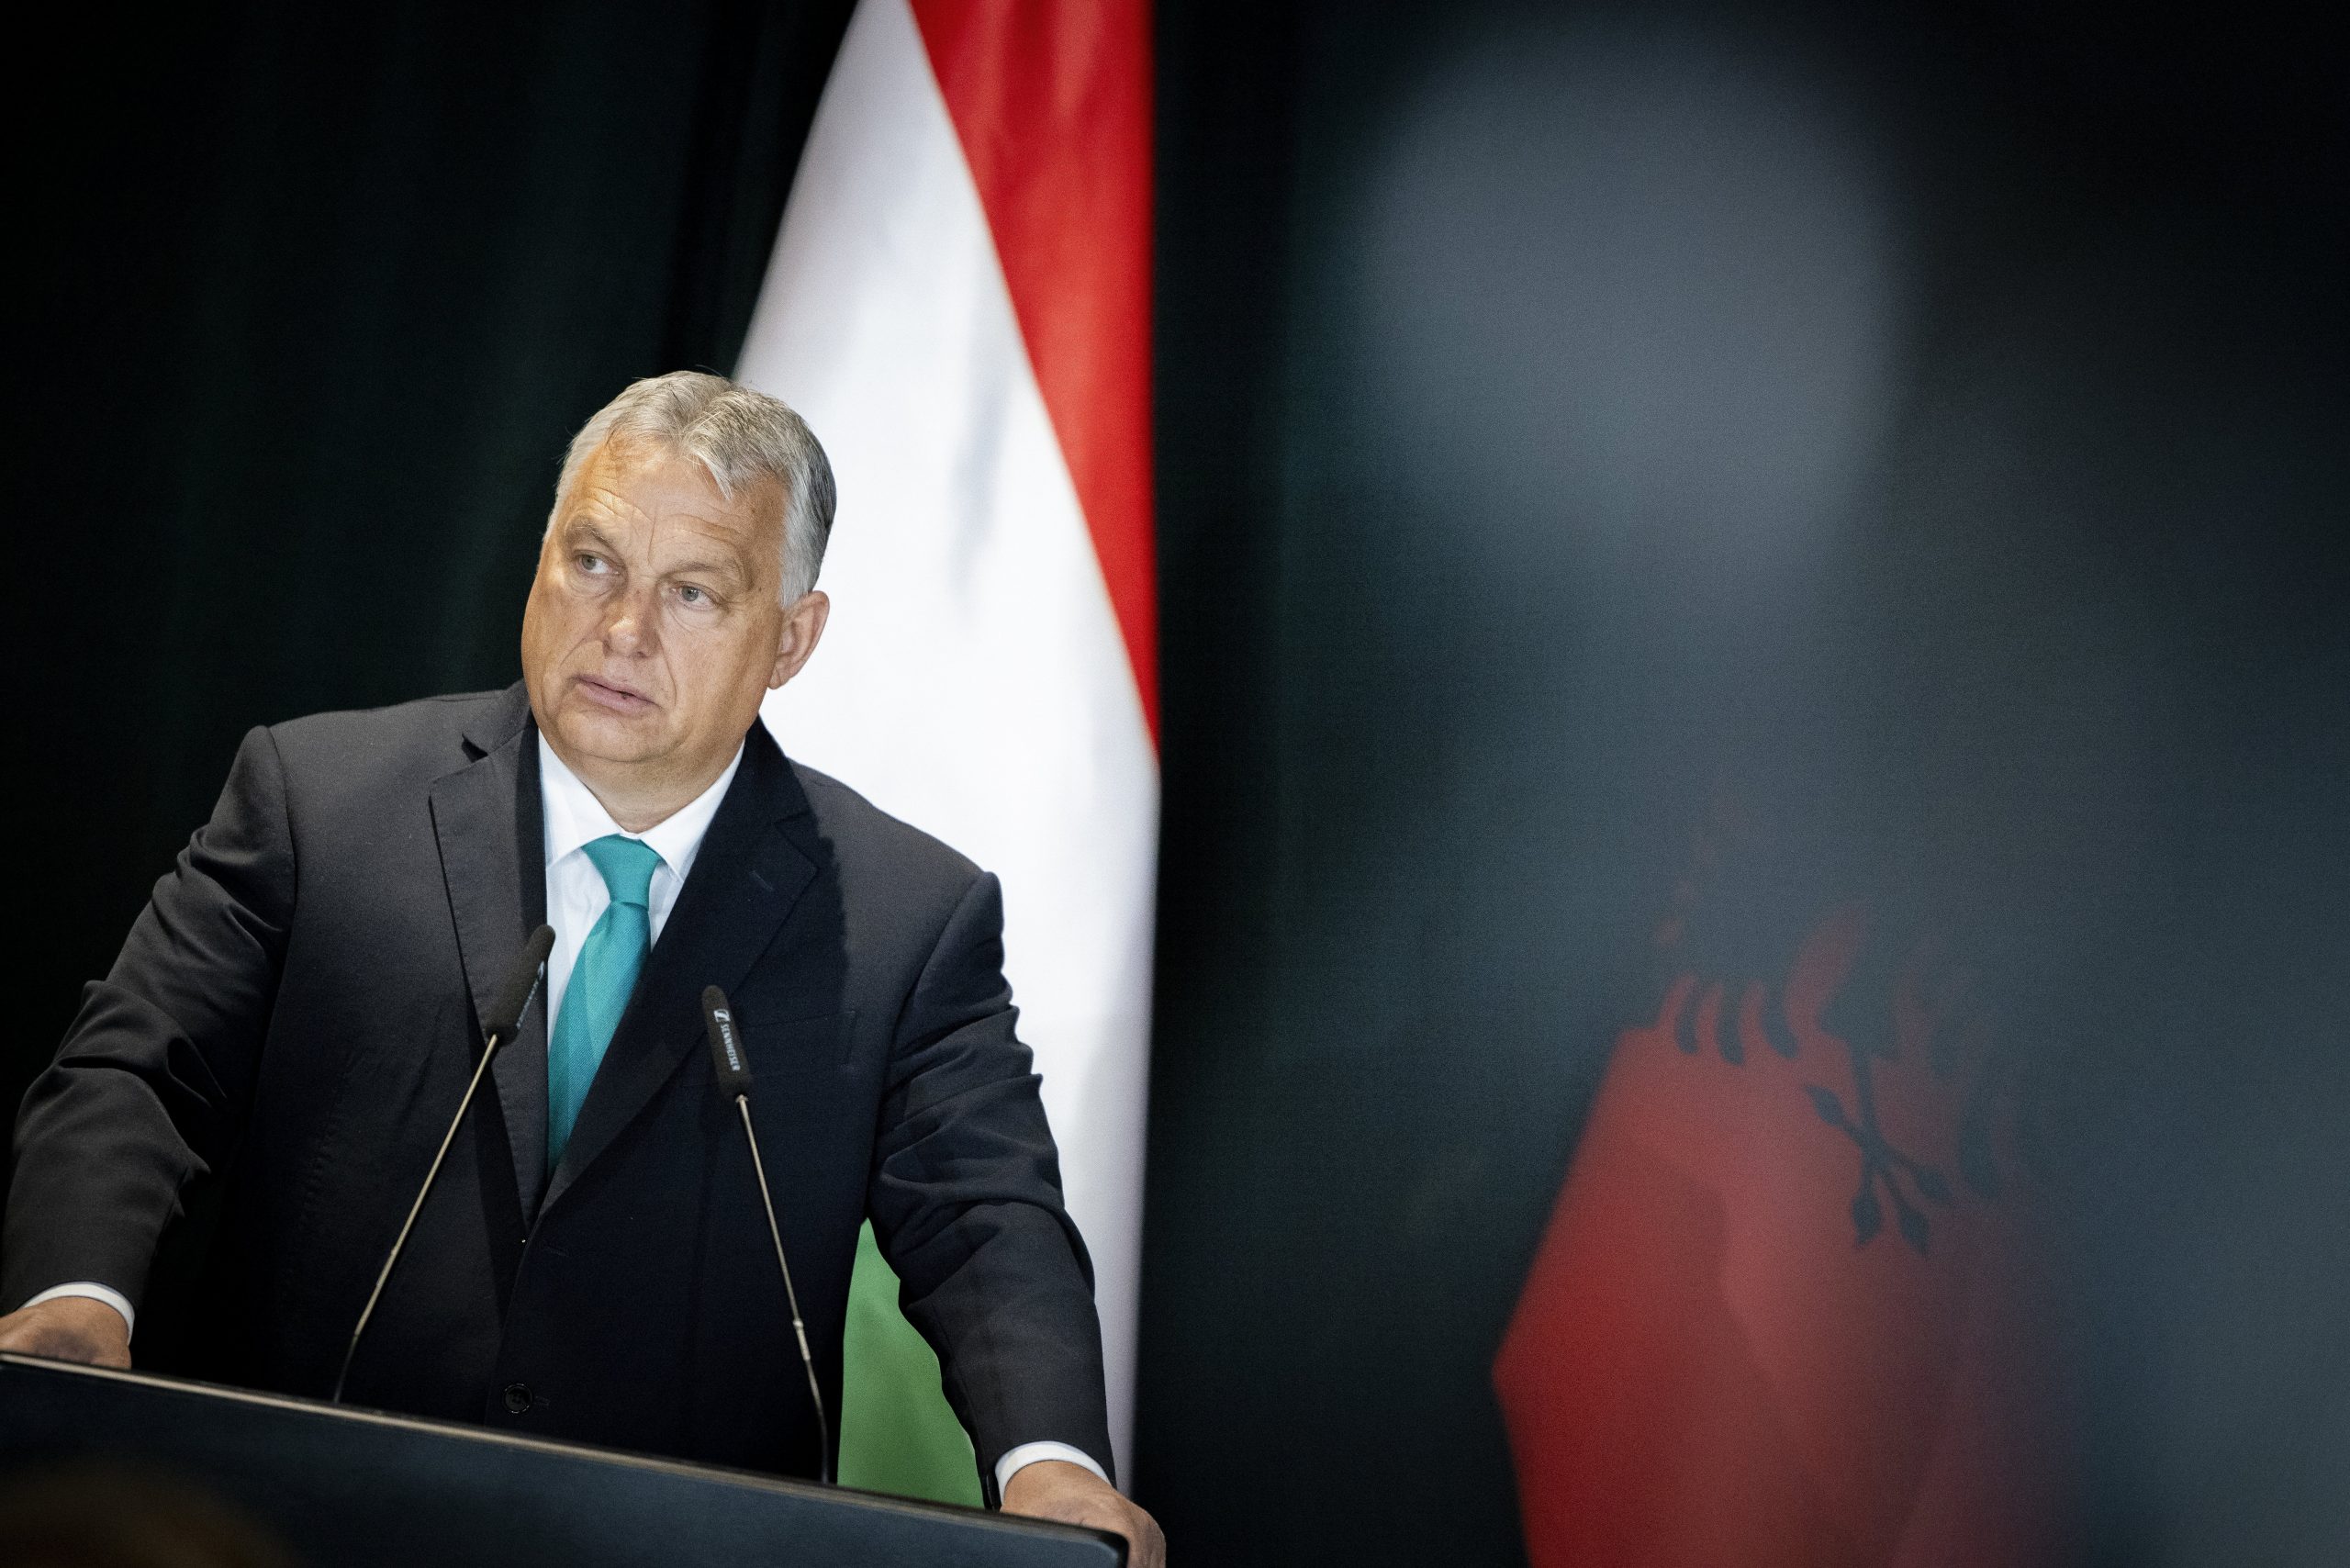 Laut Viktor Orbán muss Europa in wirtschaftlicher und sicherheitspolitischer Hinsicht gestärkt werden